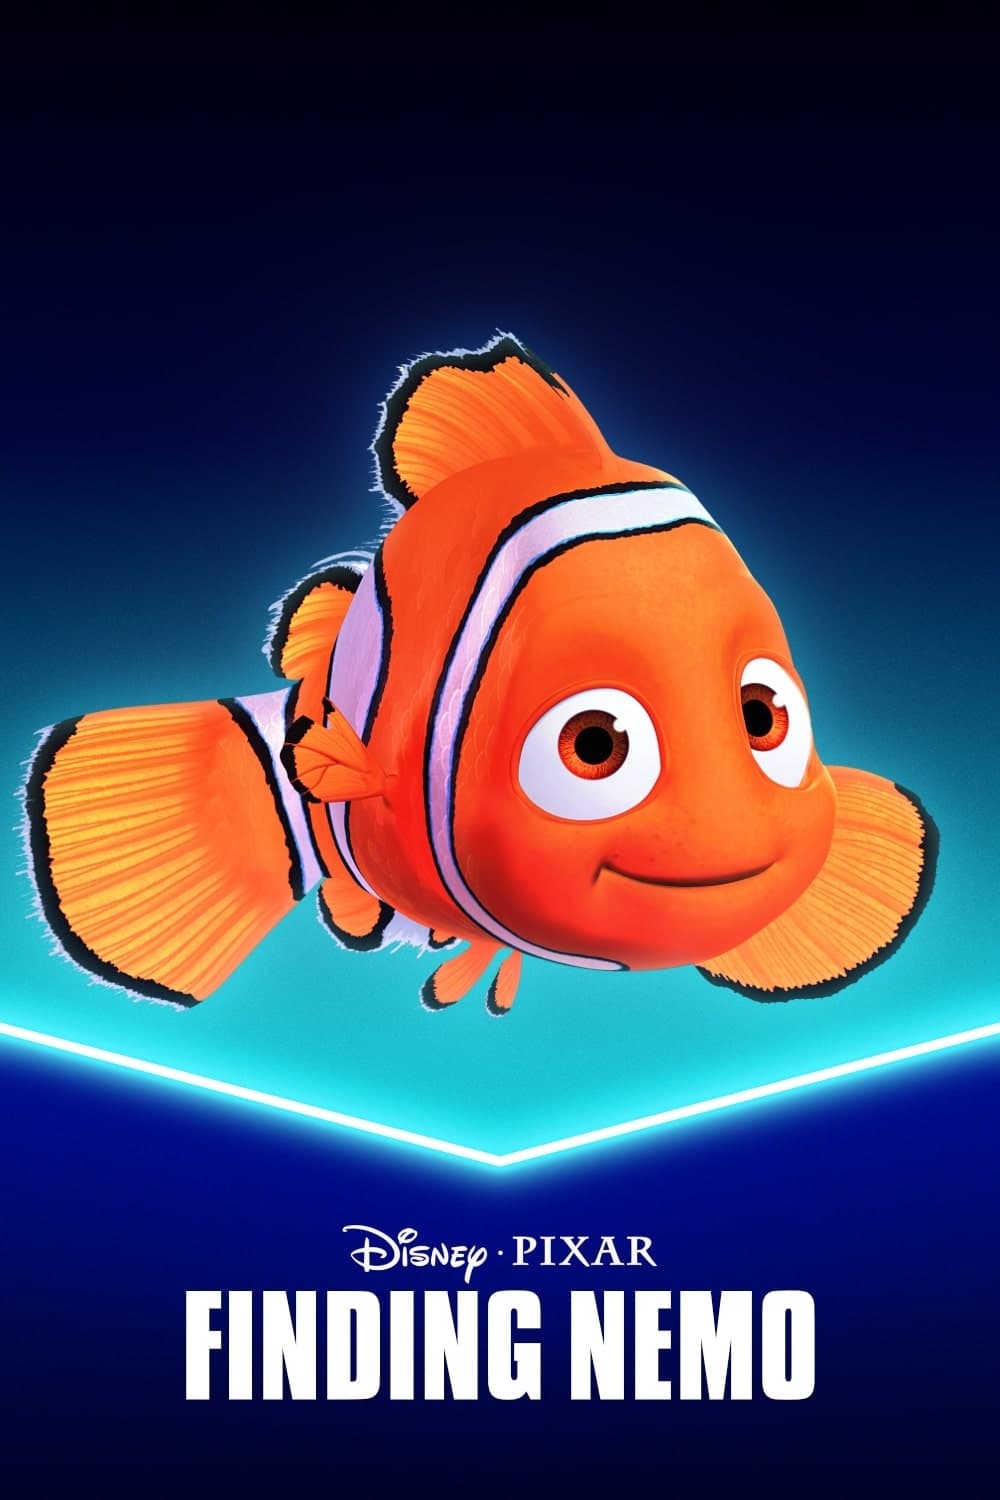 Stiahni si Filmy Kreslené Hľadá sa Nemo / Finding Nemo (2003)[W-dl][2160p] = CSFD 86%